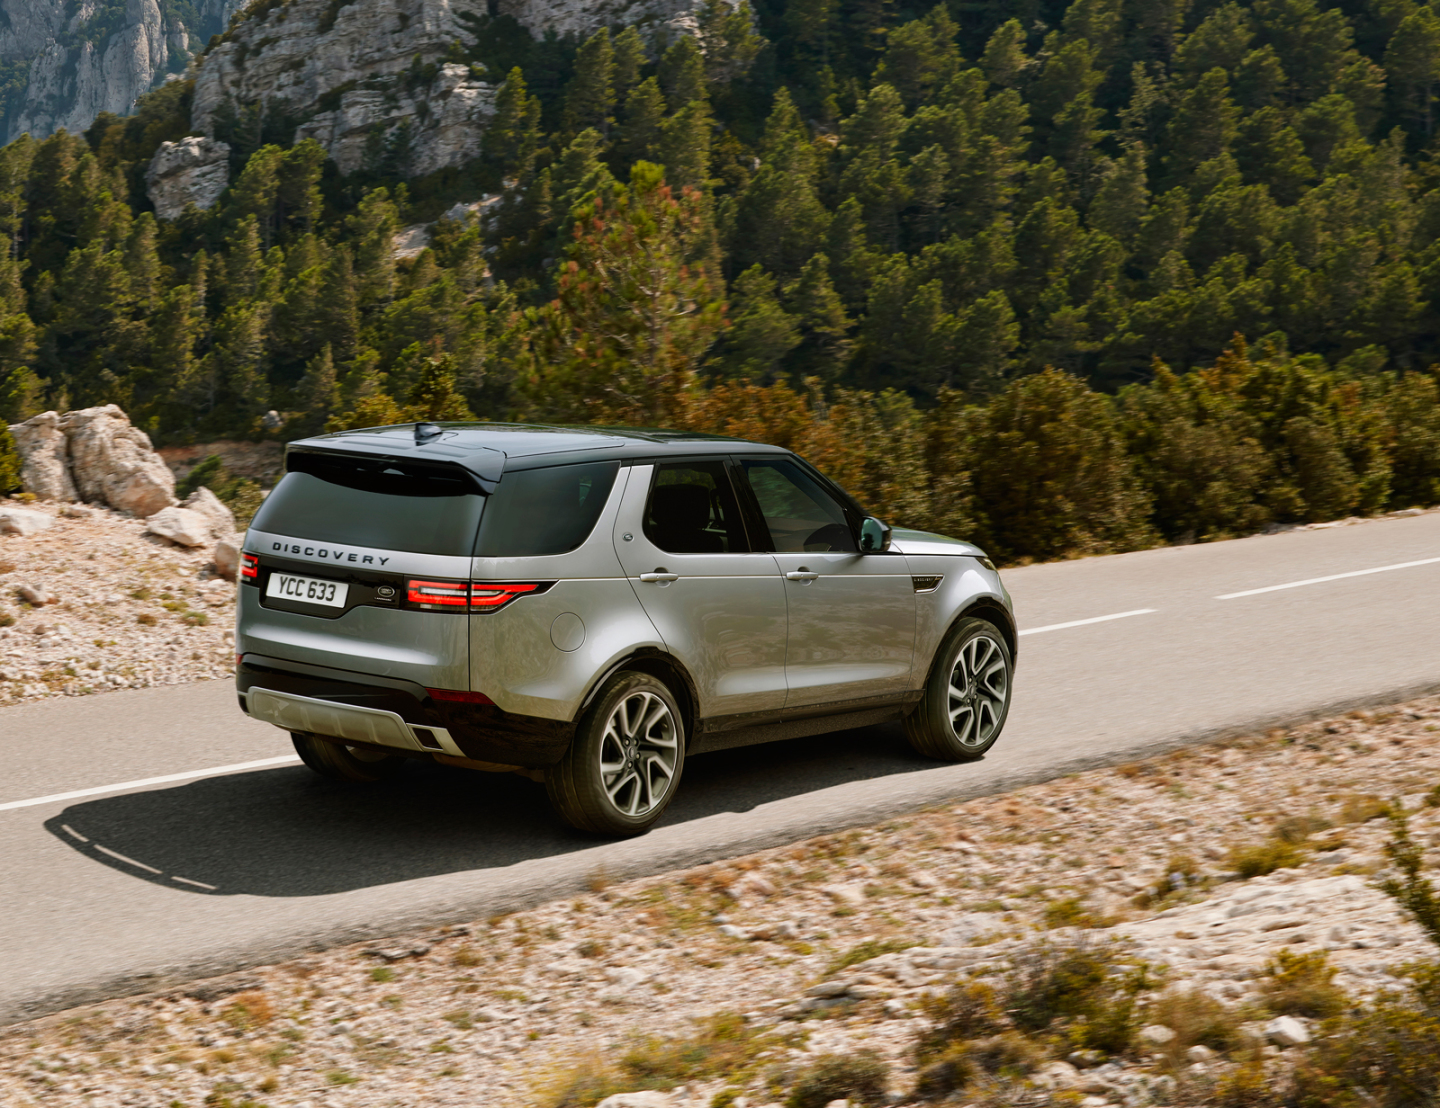 Версия Land Rover Discovery Landmark появится в продаже летом